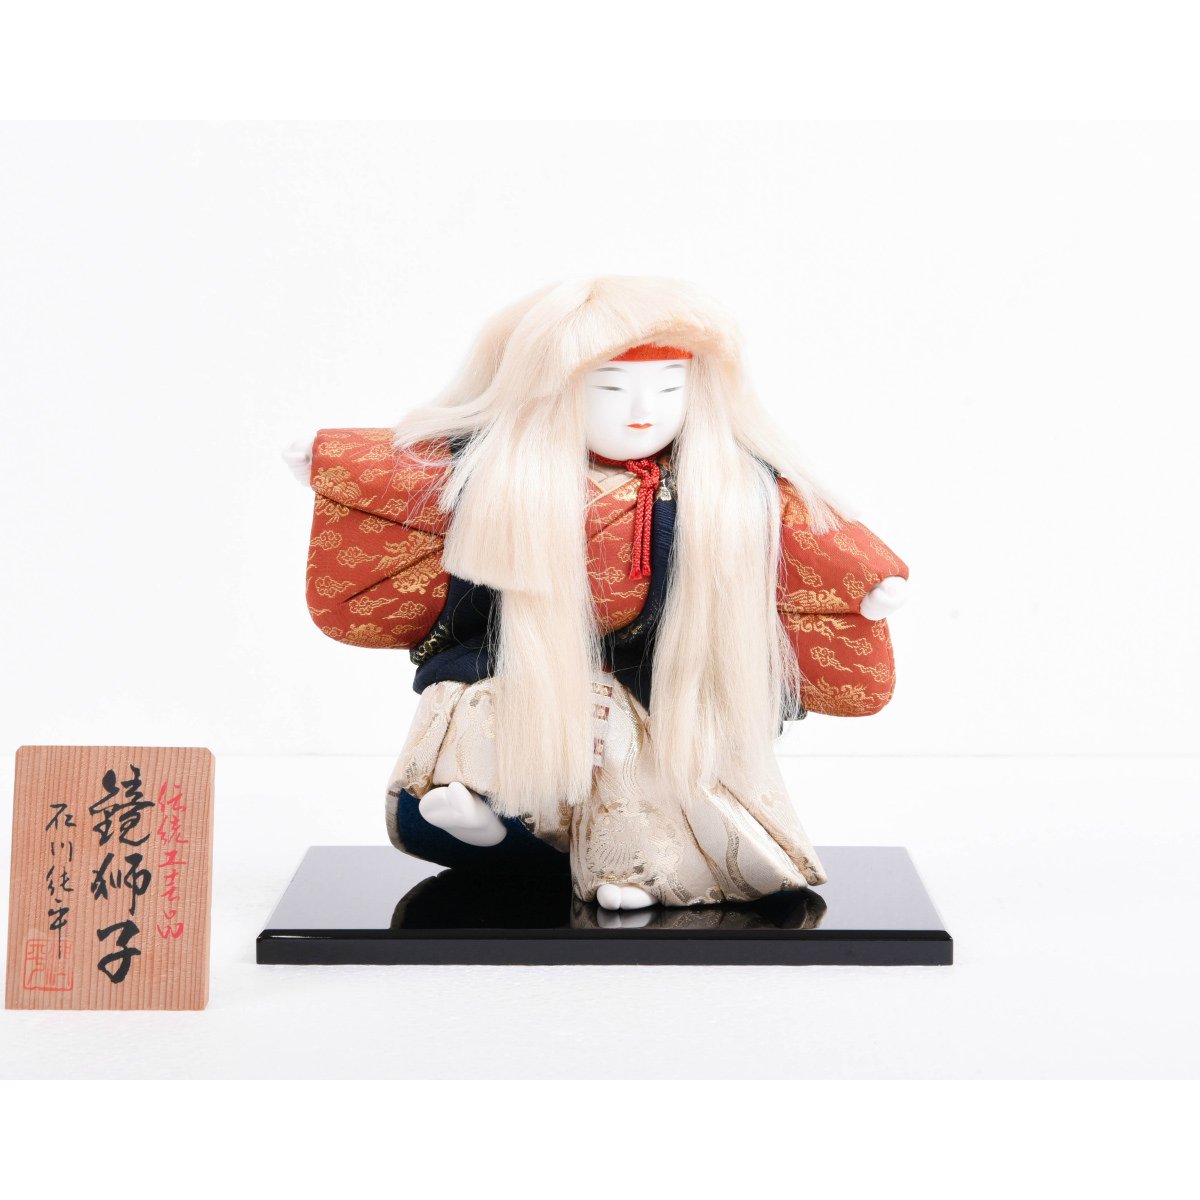 文化人形 創作人形 作家様 約25cm - 人形